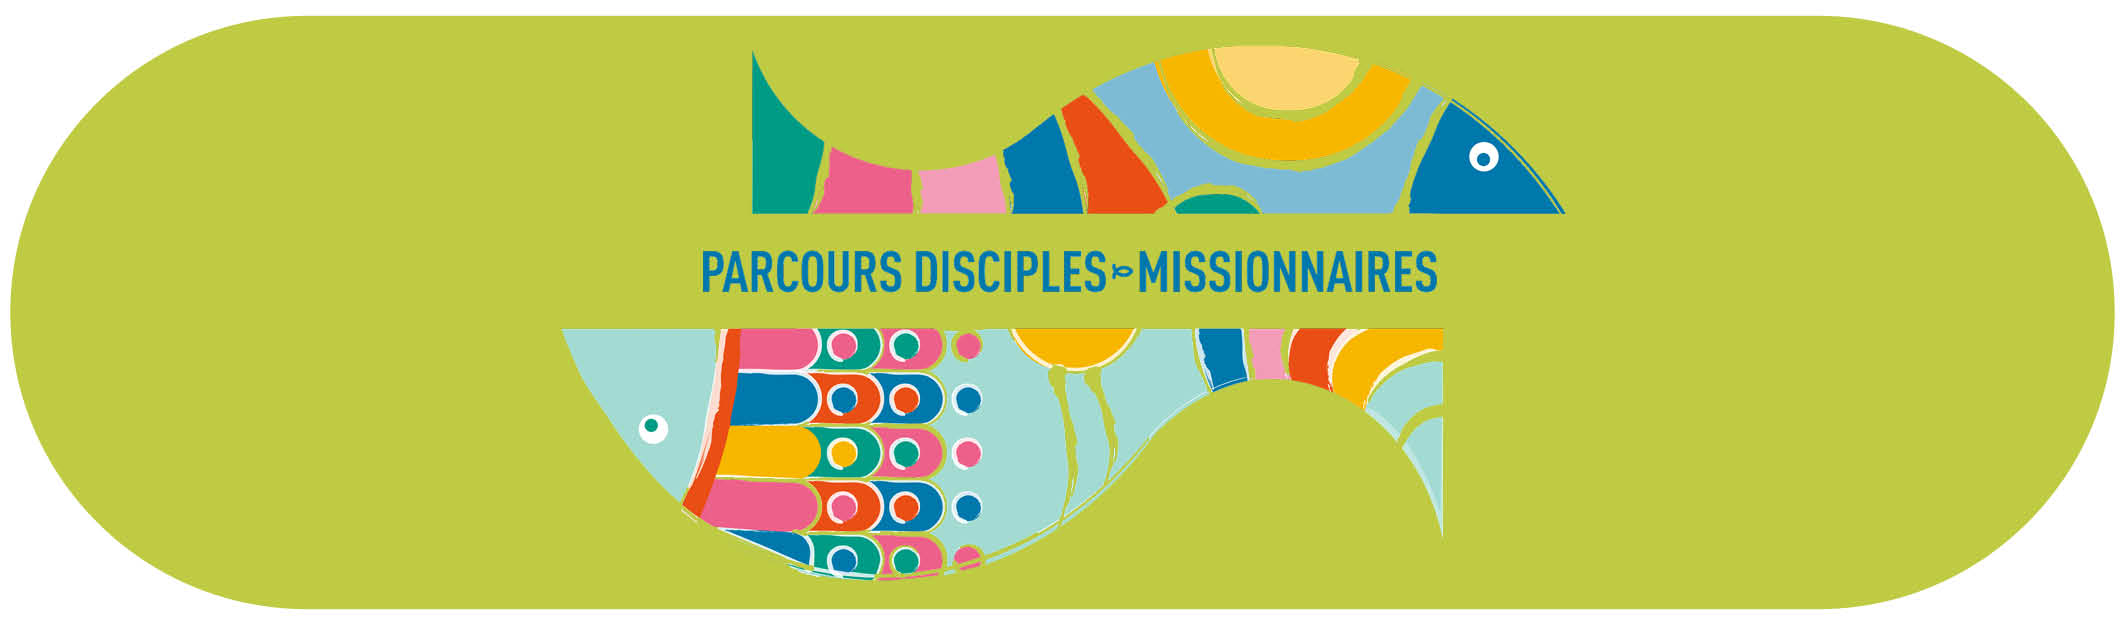 parcours disciples-missionnaires